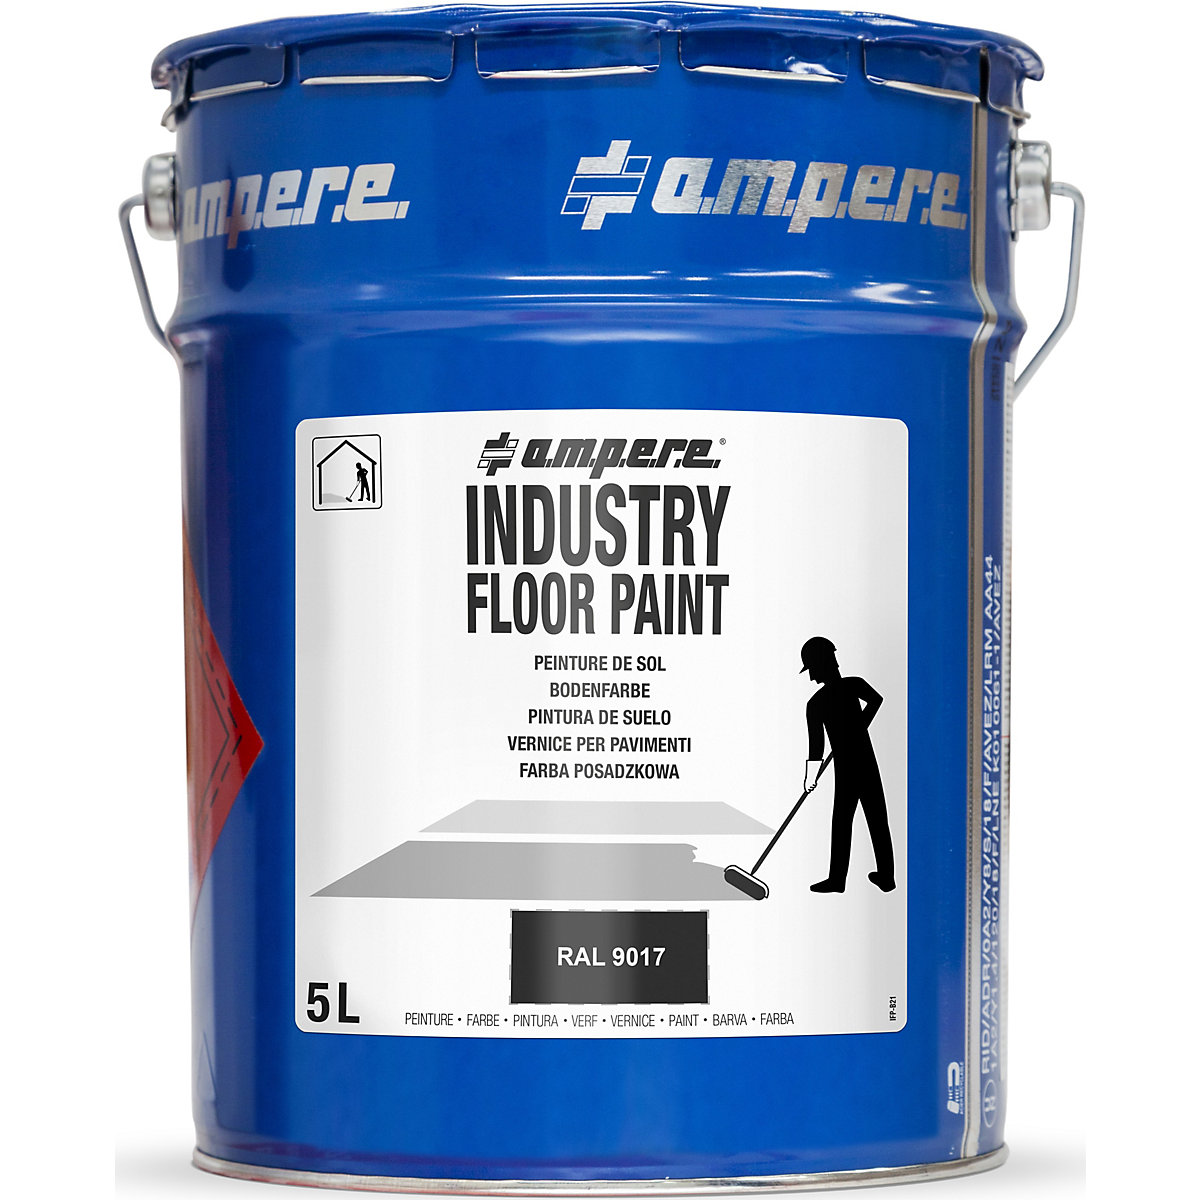 Vloermarkeringsverf Industry Floor Paint® – Ampere, inhoud 5 l, zwart-6